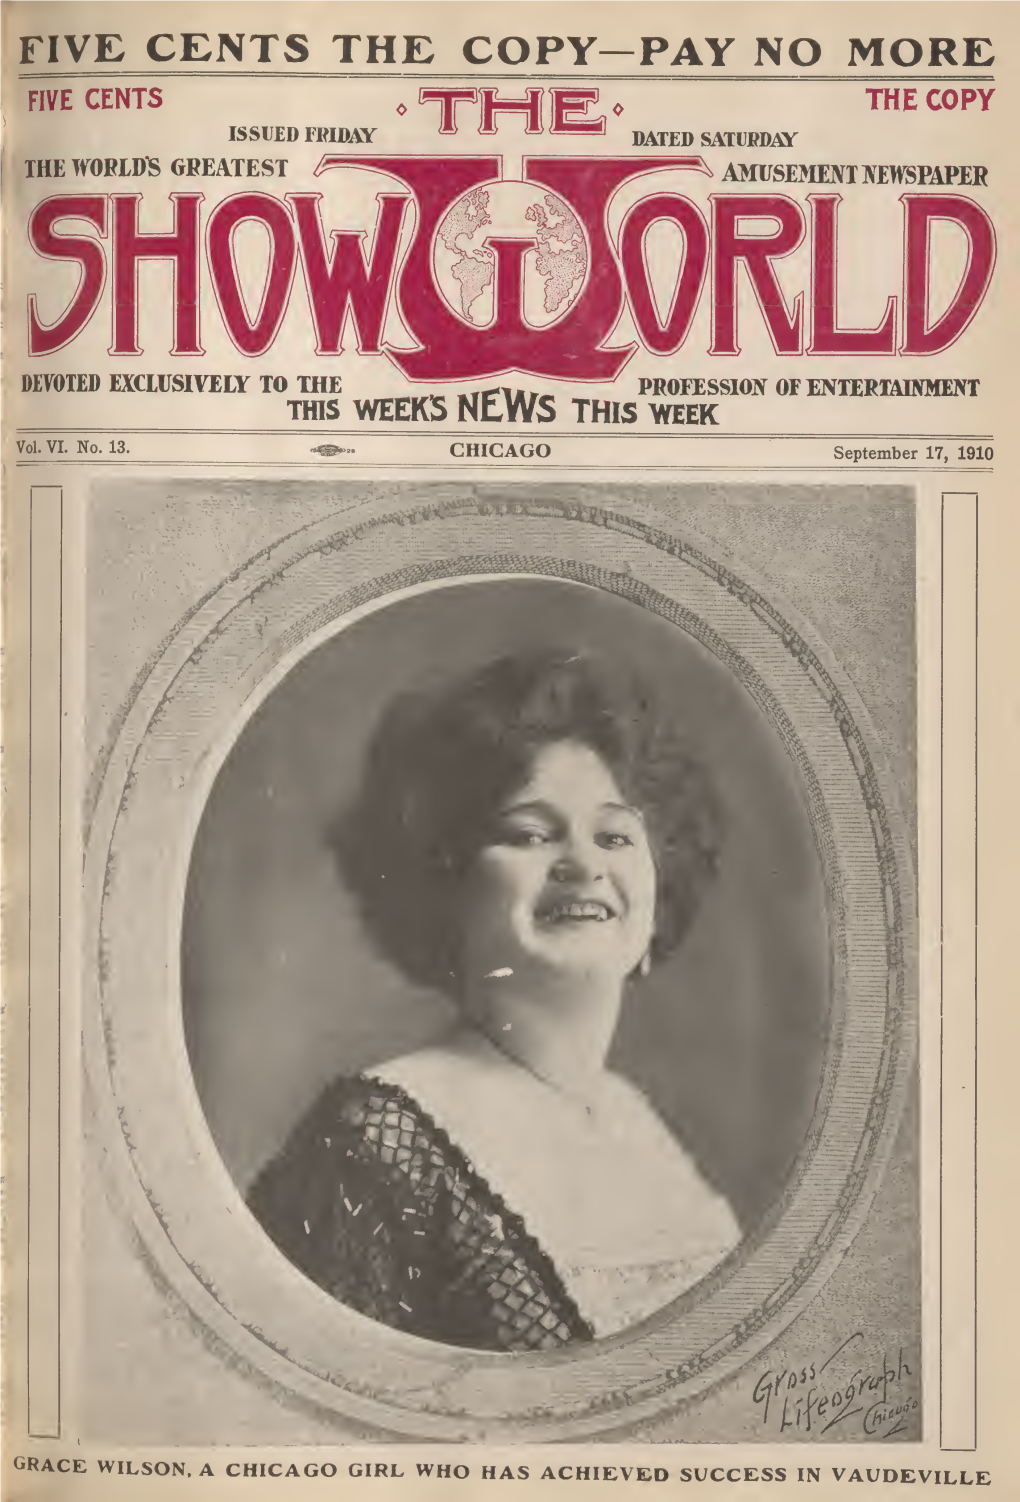 Show World (September 17, 1910)